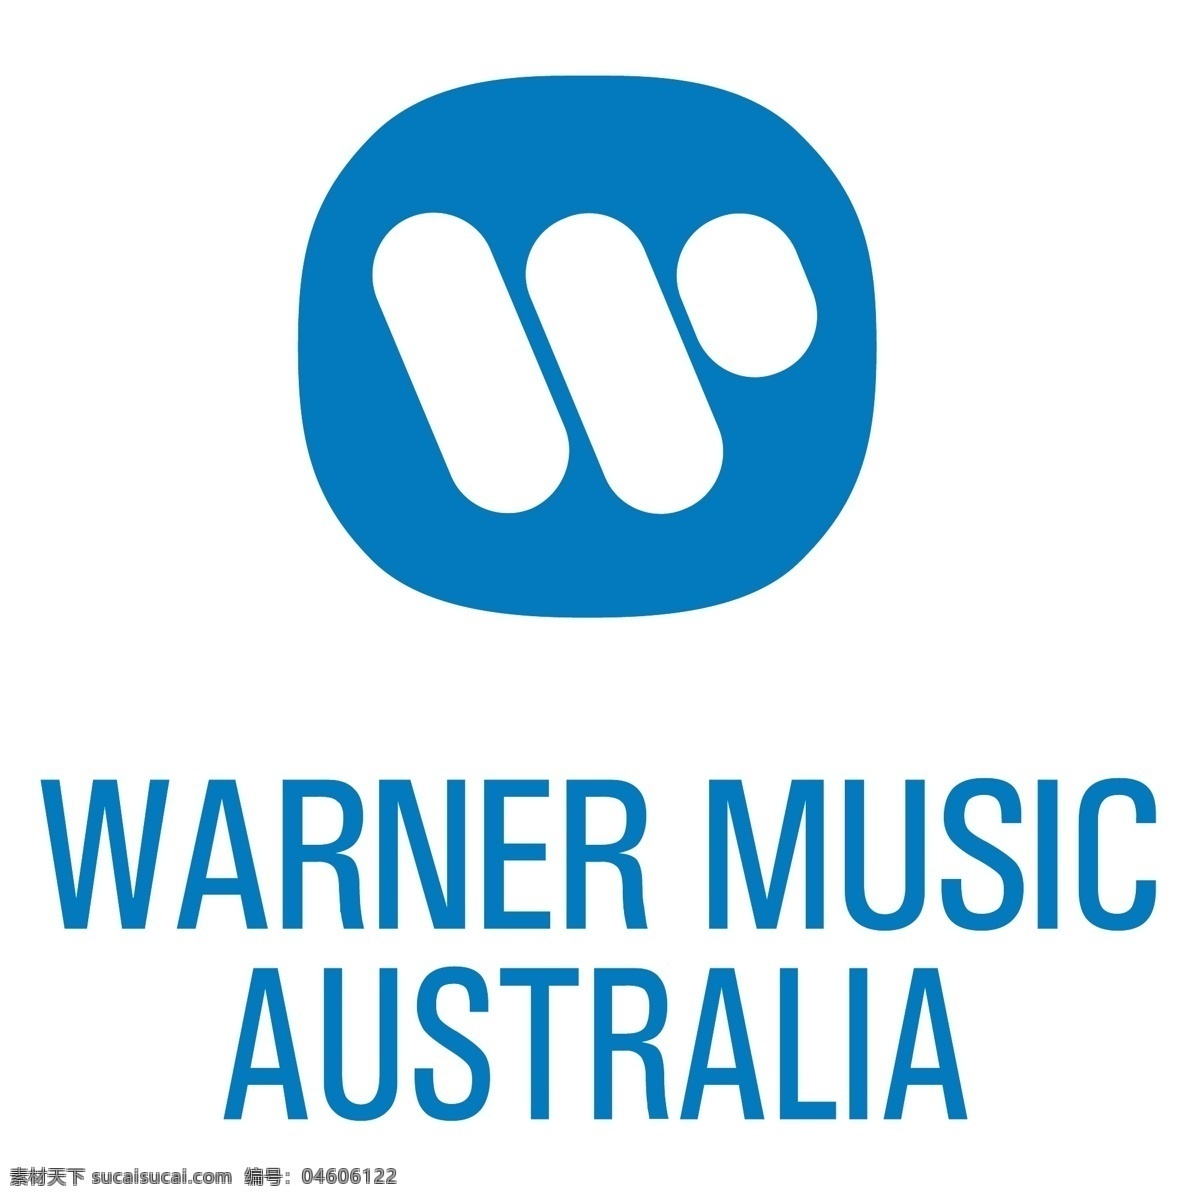 澳大利亚 华纳 音乐 华纳音乐 向量 标志 矢量 载体 华纳音乐集团 矢量图 建筑家居